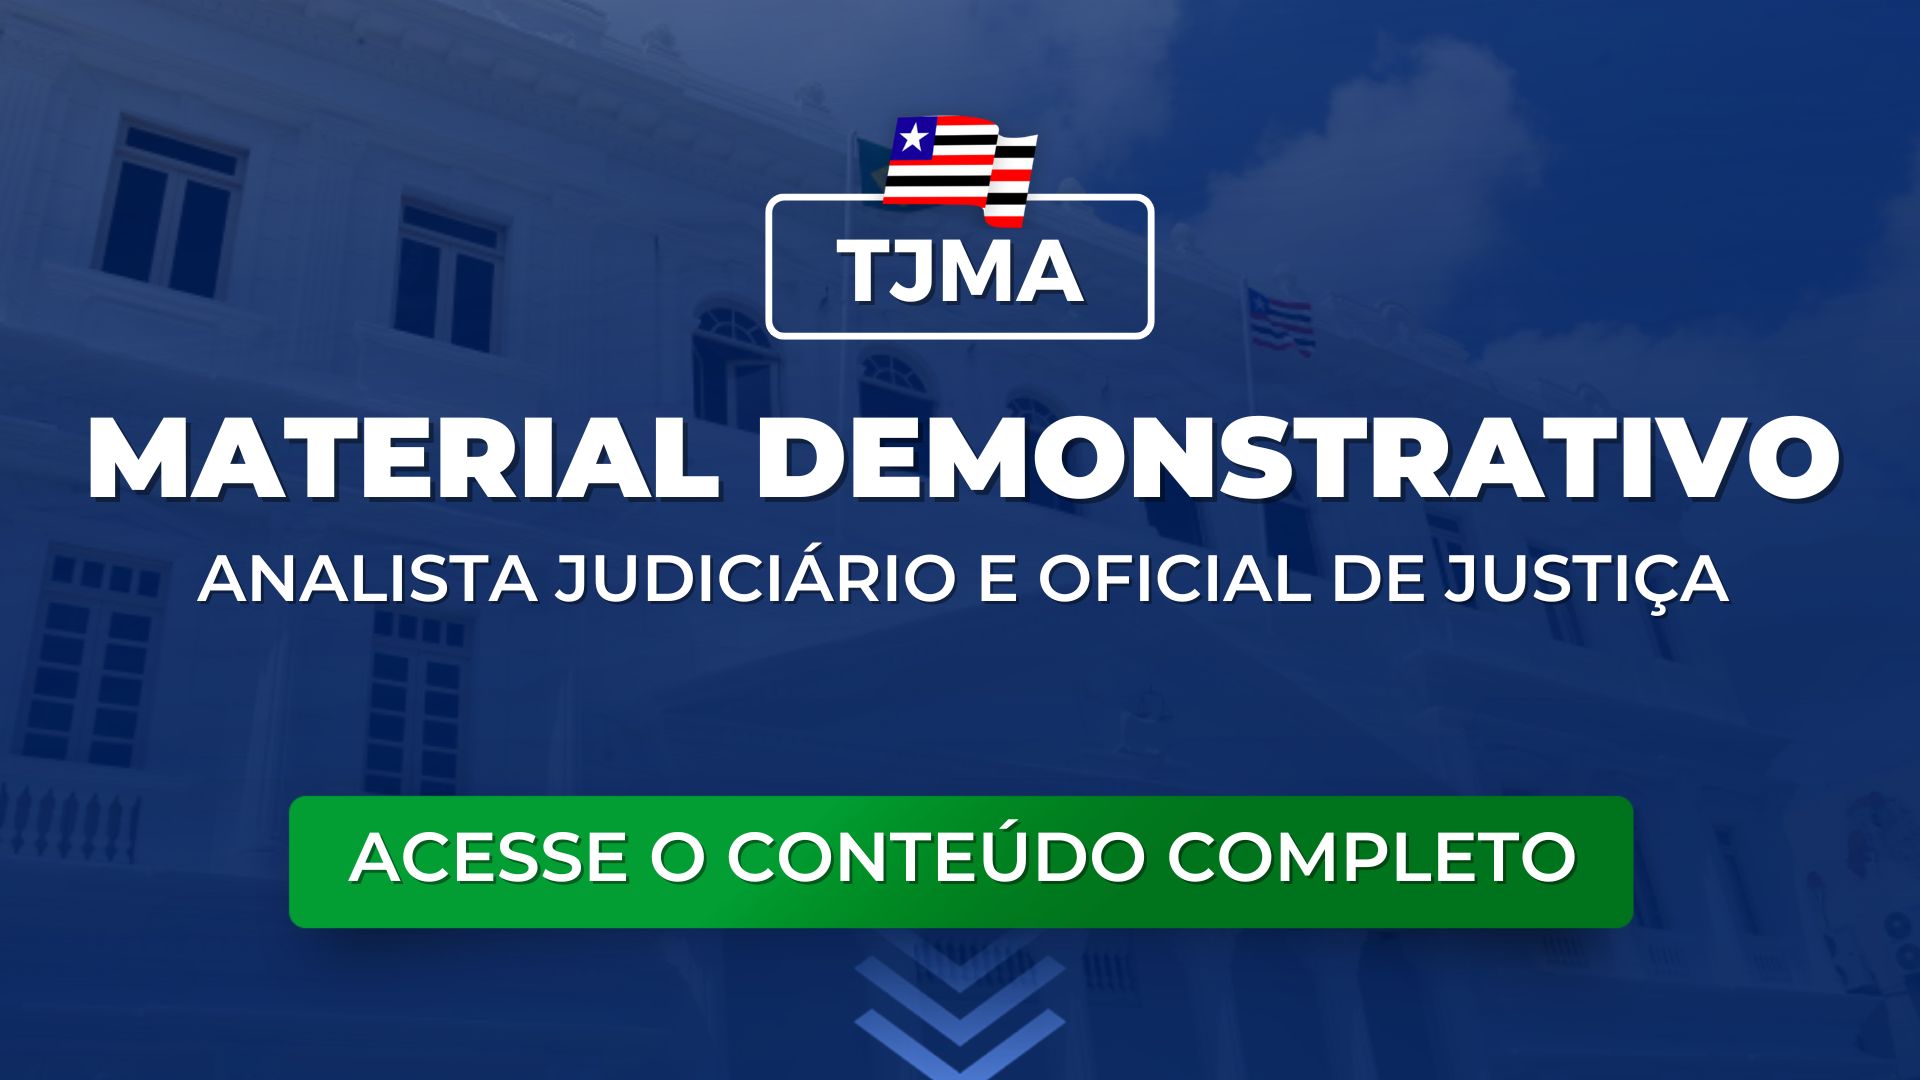 TJMA: Material Demonstrativo para Analista Judiciário e Oficial de Justiça. Baixe aqui!